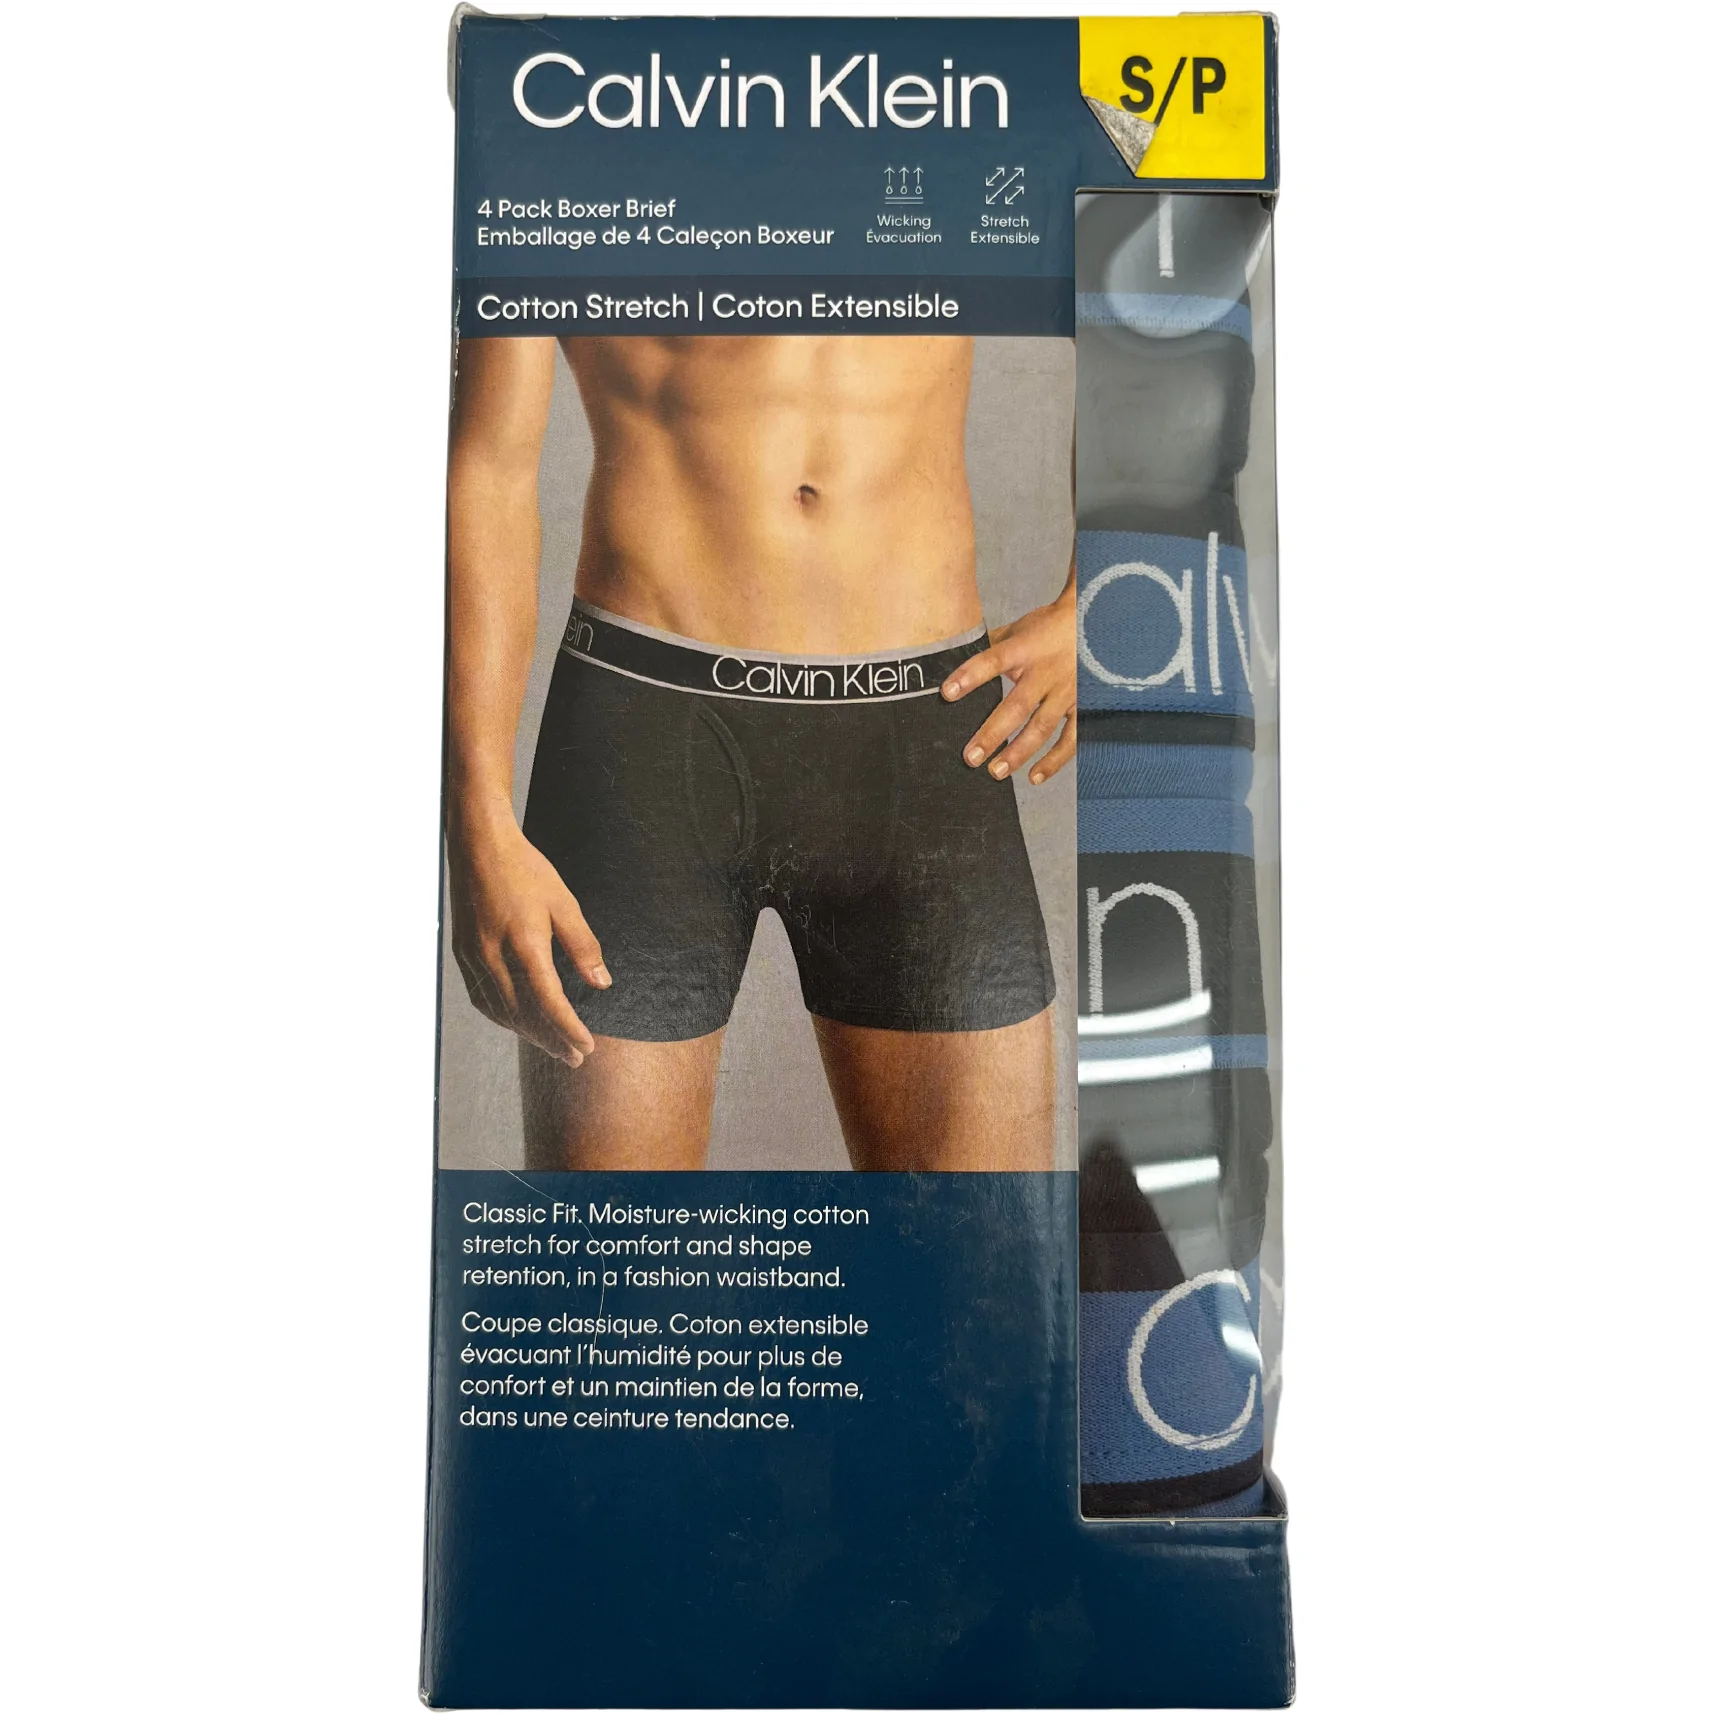 Calvin Klein Cotton Stretch Moisture Wicking Boxer Briefs, Pack of